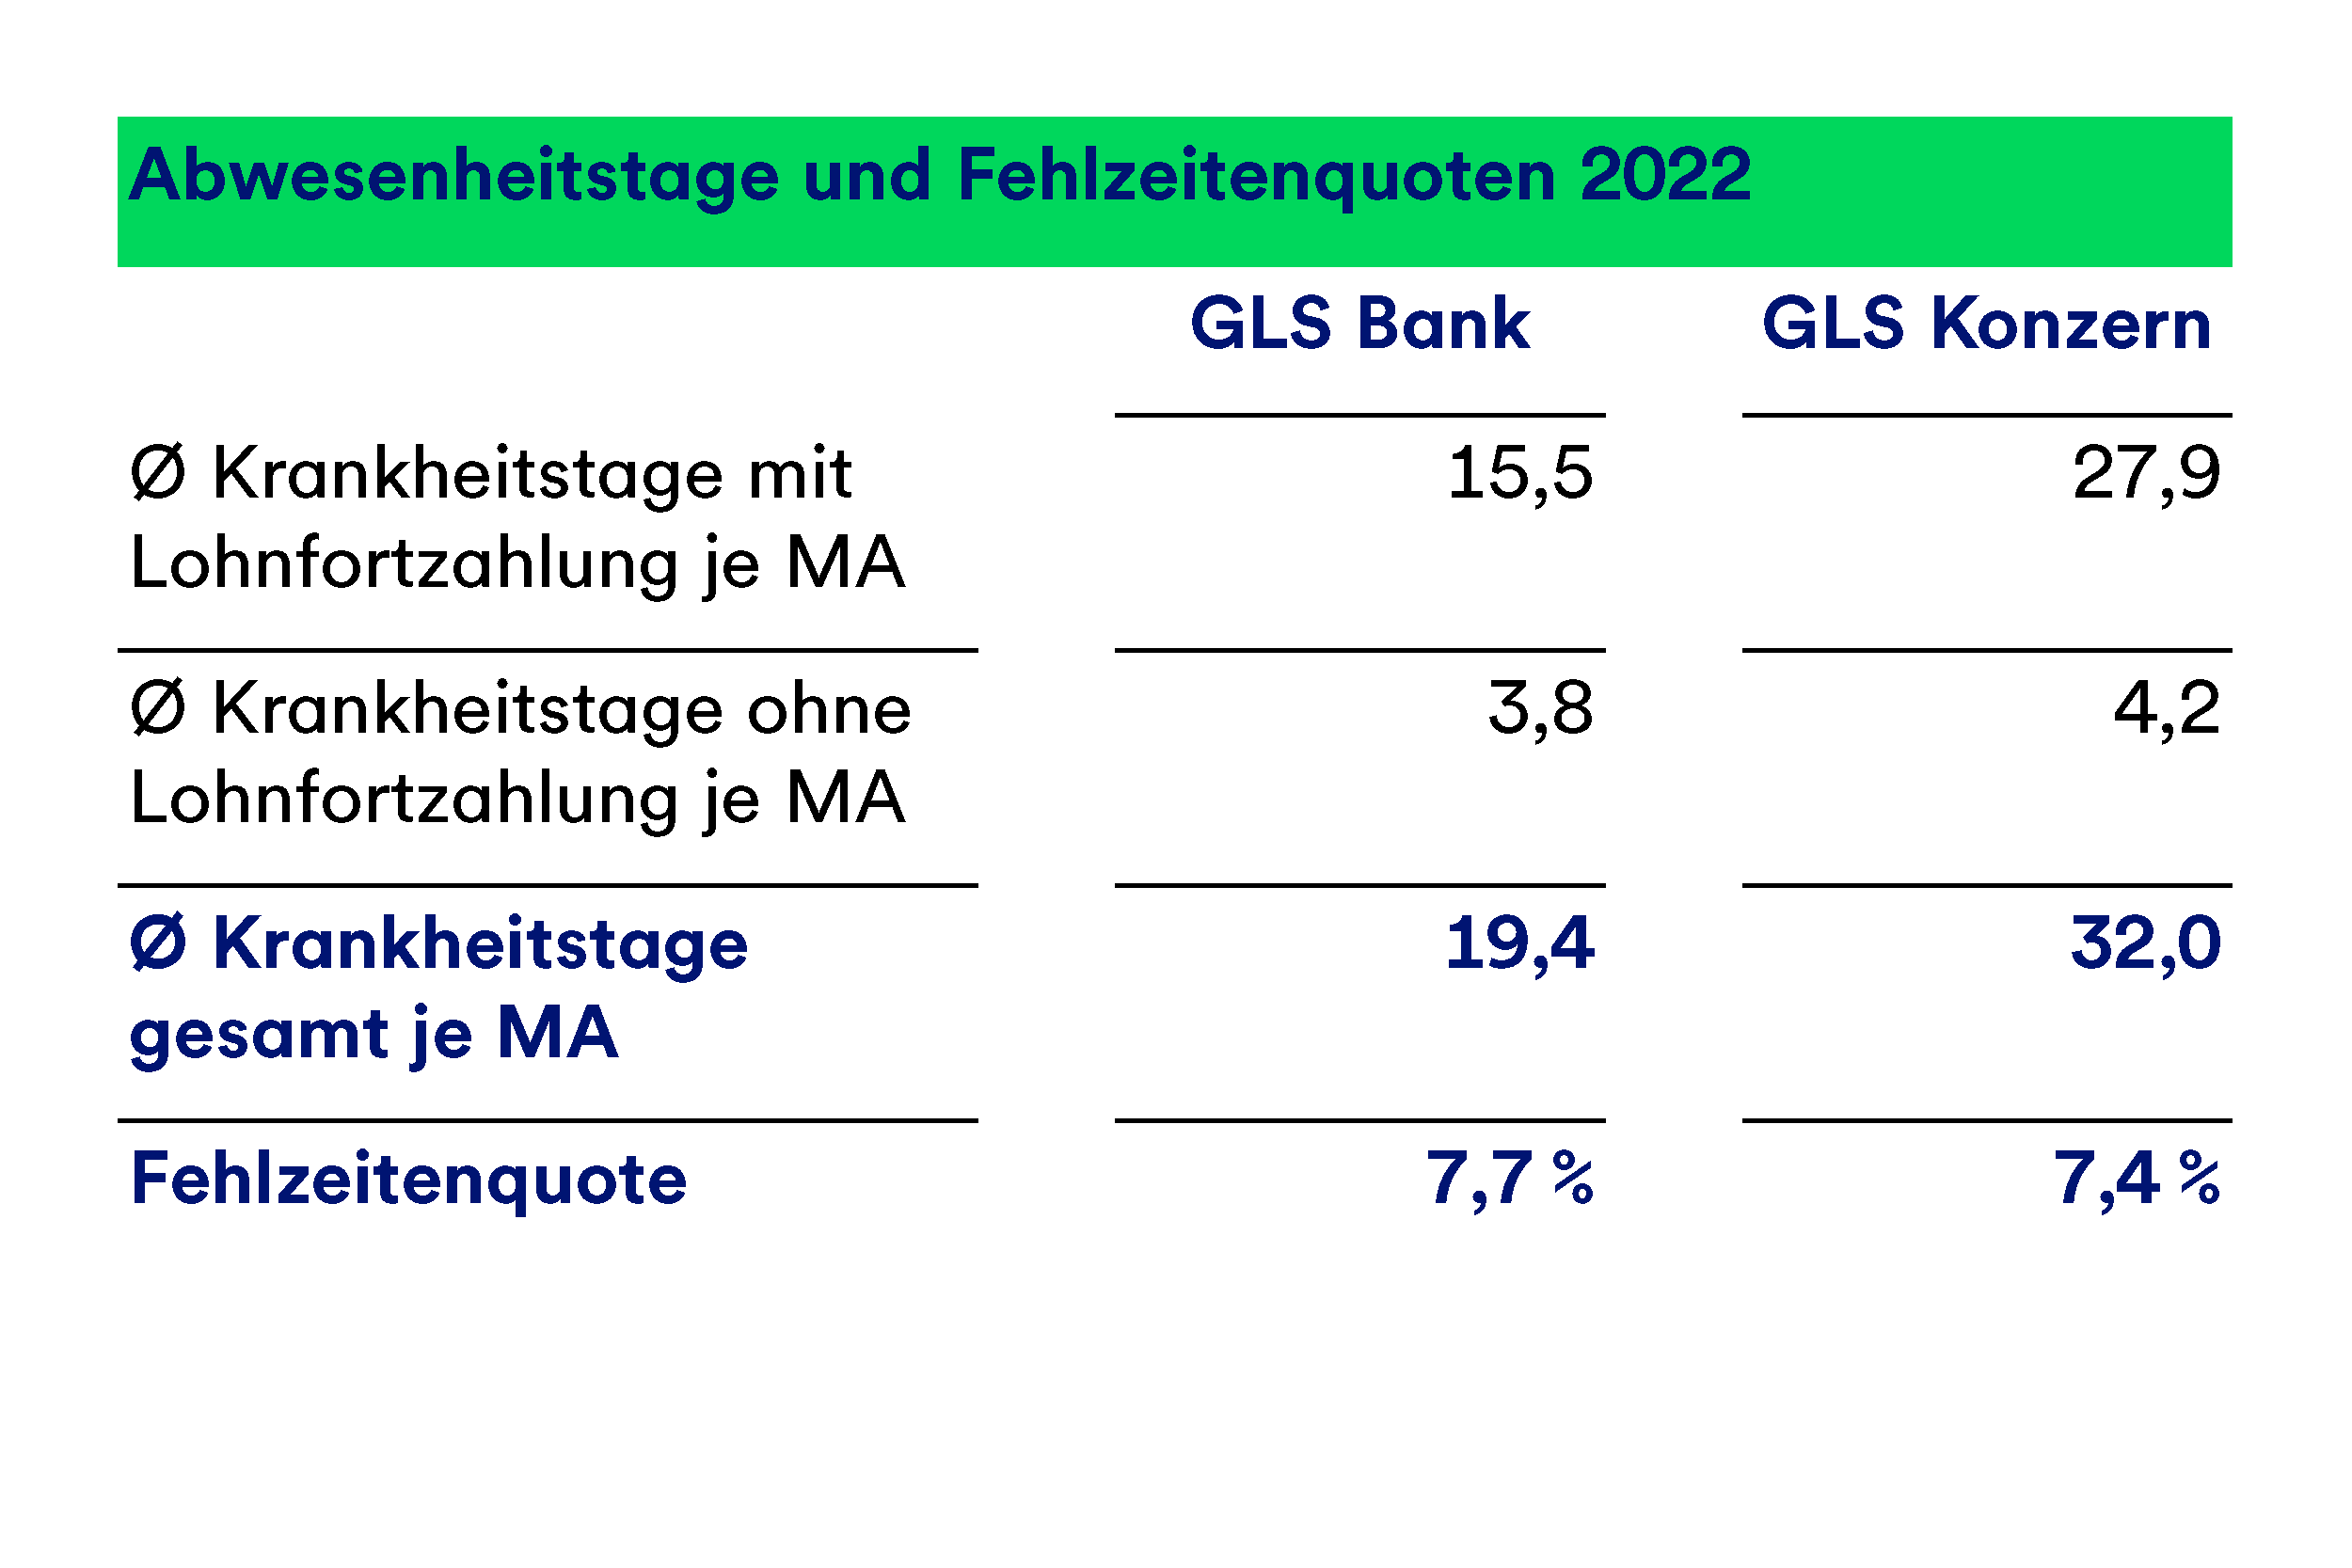 Eine Grafik, die die Abwesenheitstage und Fehlzeitenquoten 2022 darstellt, aufgeteilt nach GLS Bank und GLS Konzern. Die Krankheitstage liegen bei 19,4 bzw. 32. Die Fehlzeitquoten liegen bei 7,7 bzw. 7,4%.